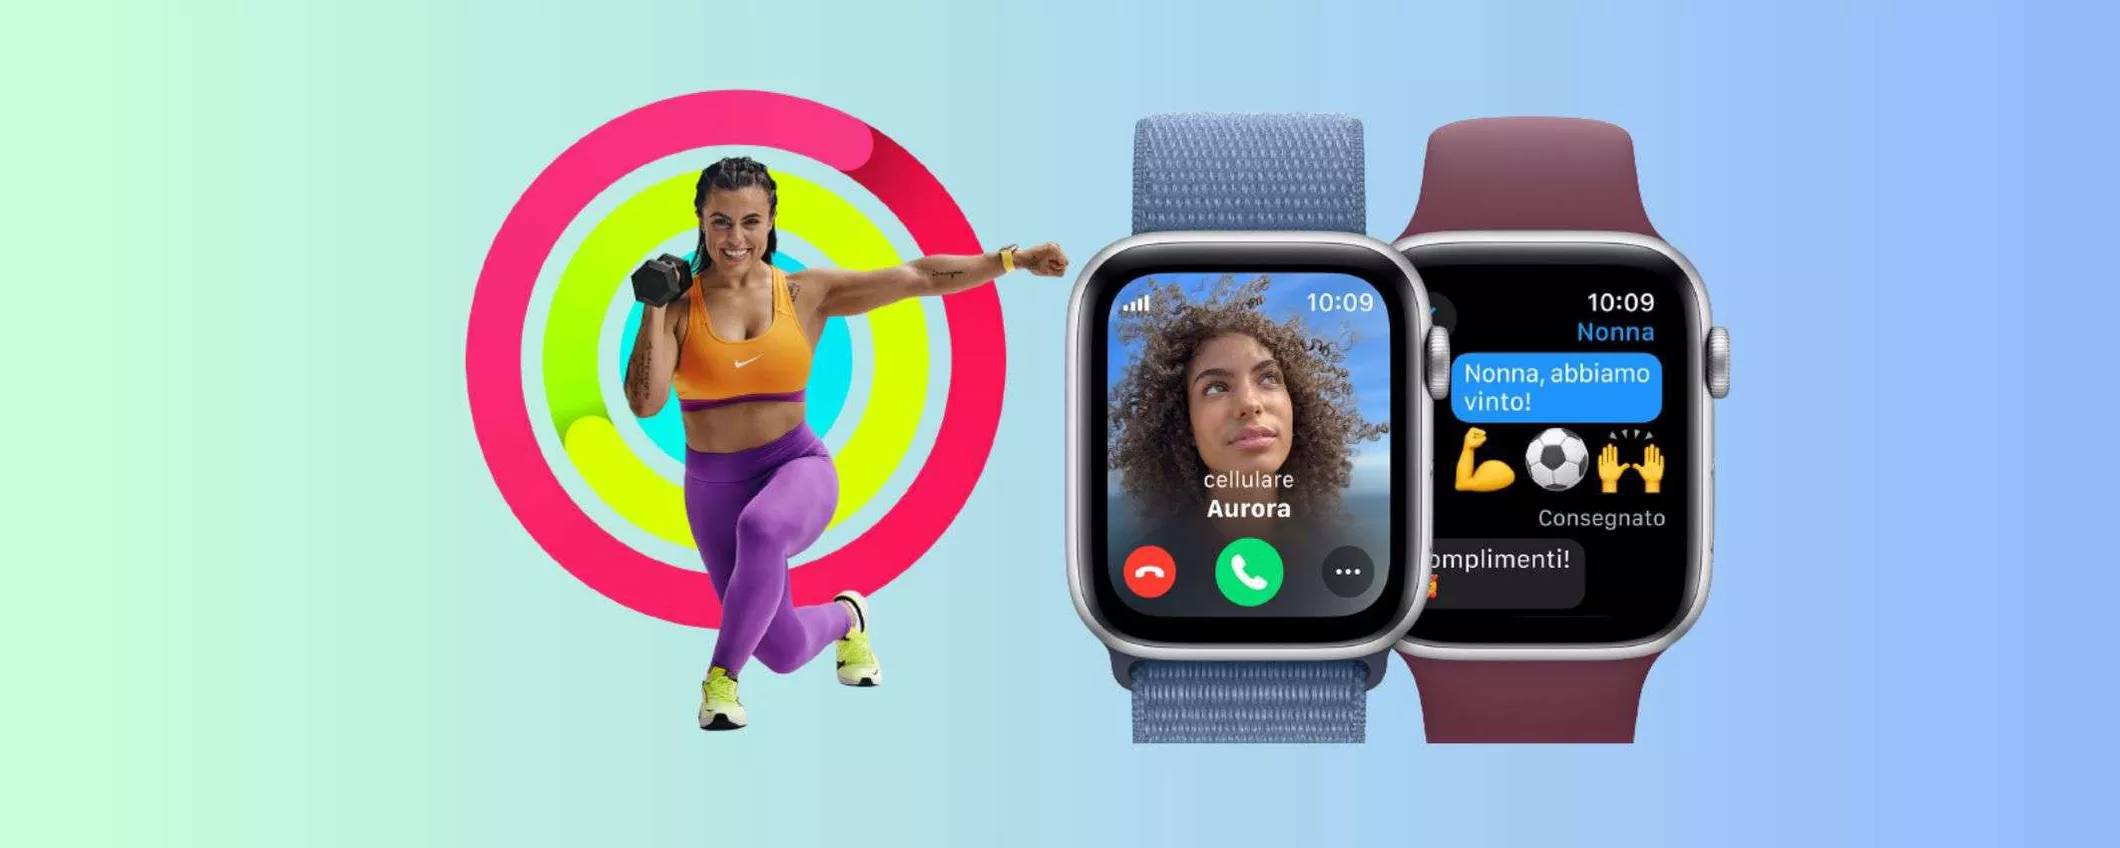 Apple Watch SE 2 in offerta a 279 euro da Unieuro (anche a rate)